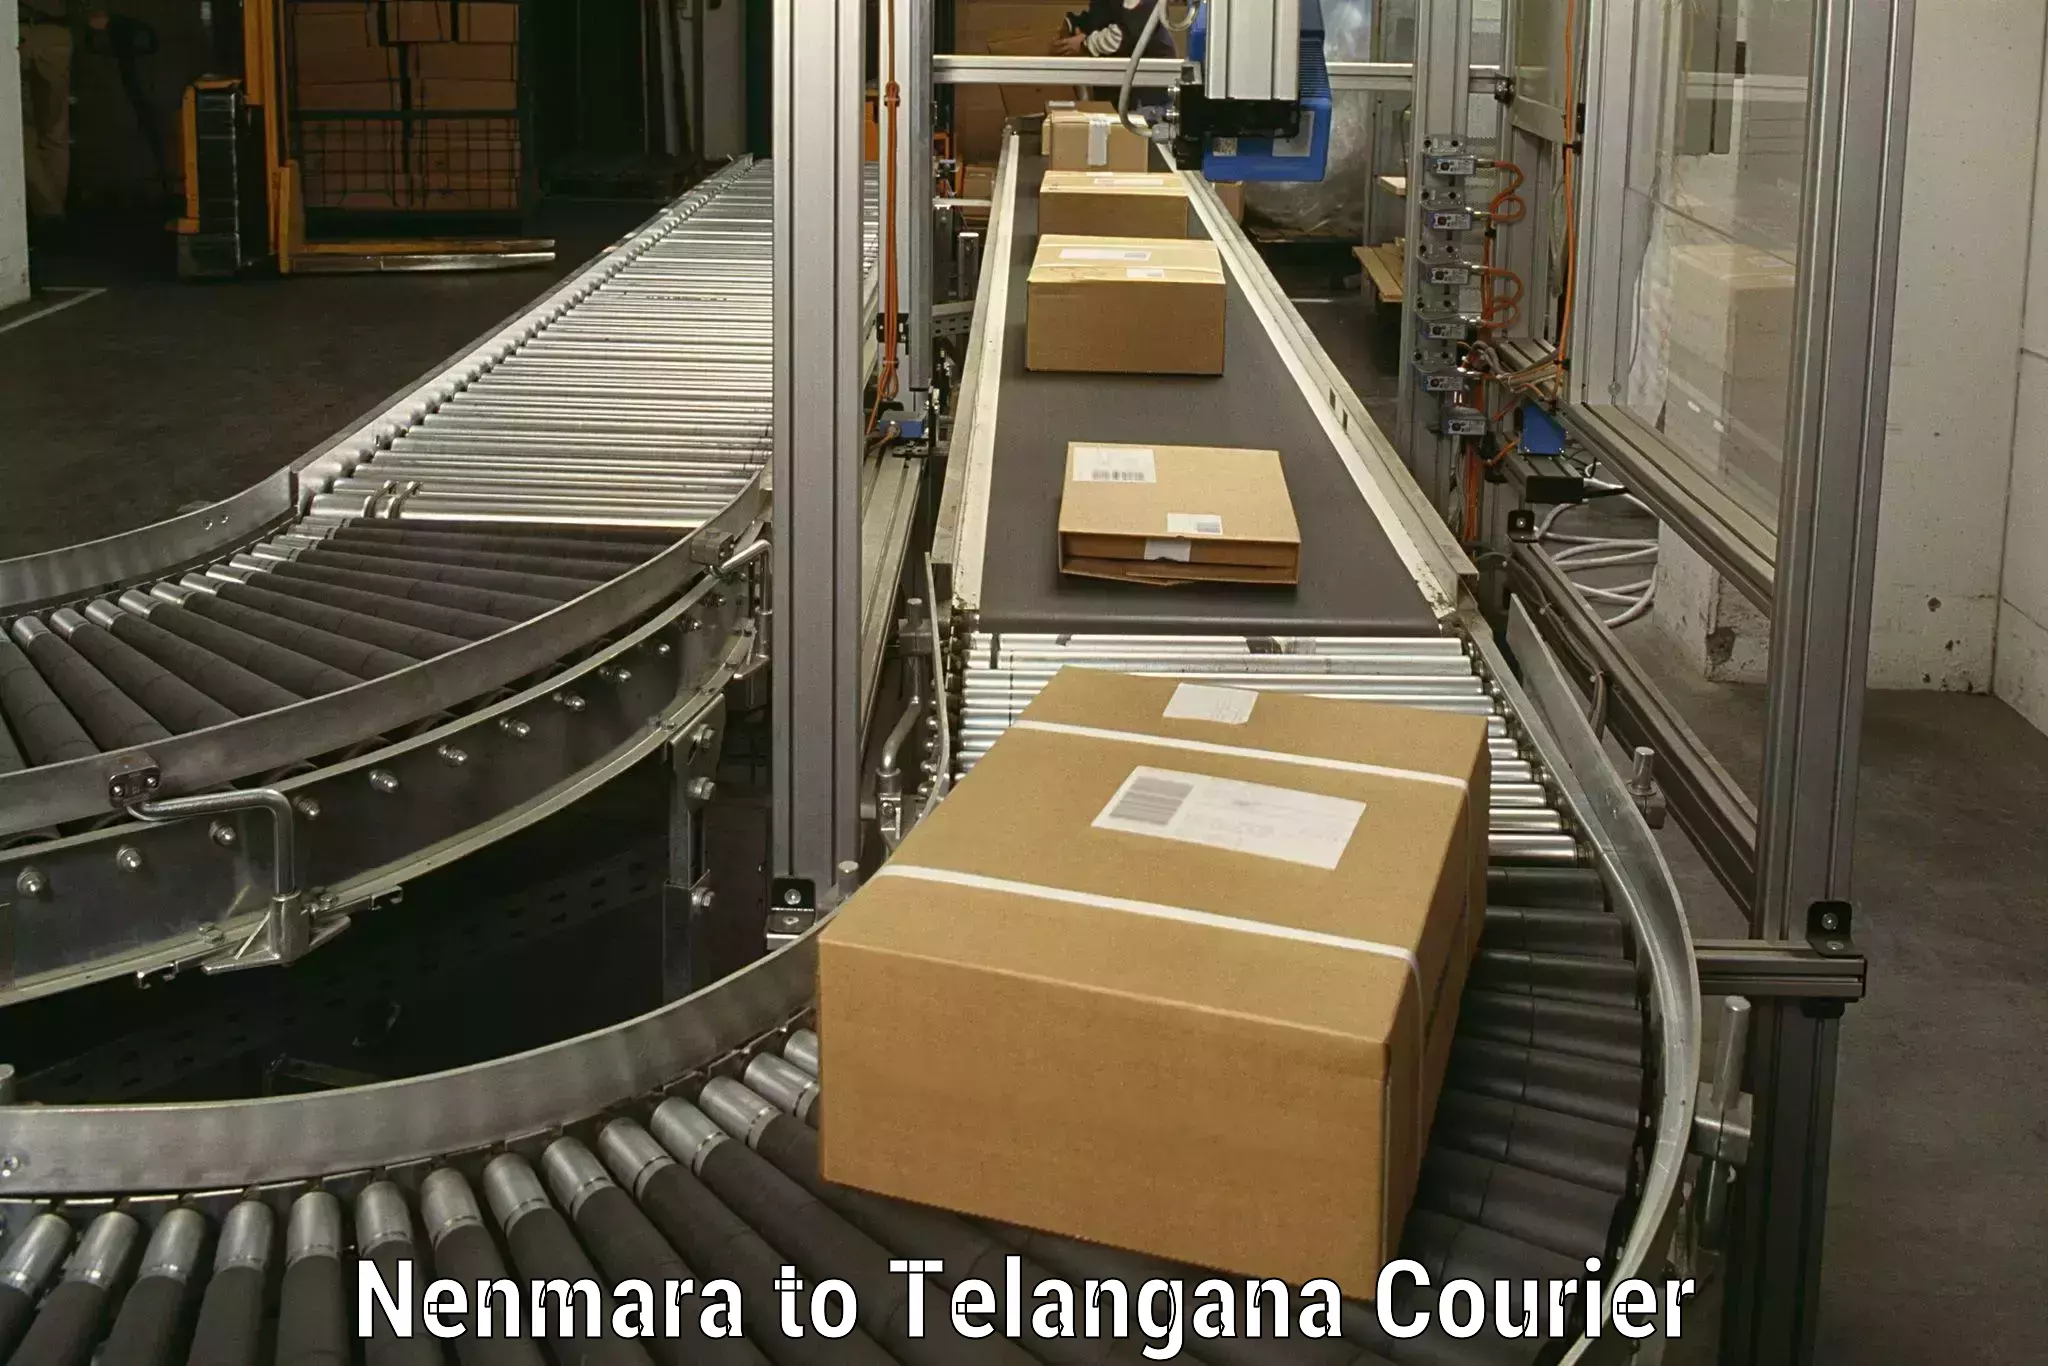 Trusted moving company Nenmara to Telangana